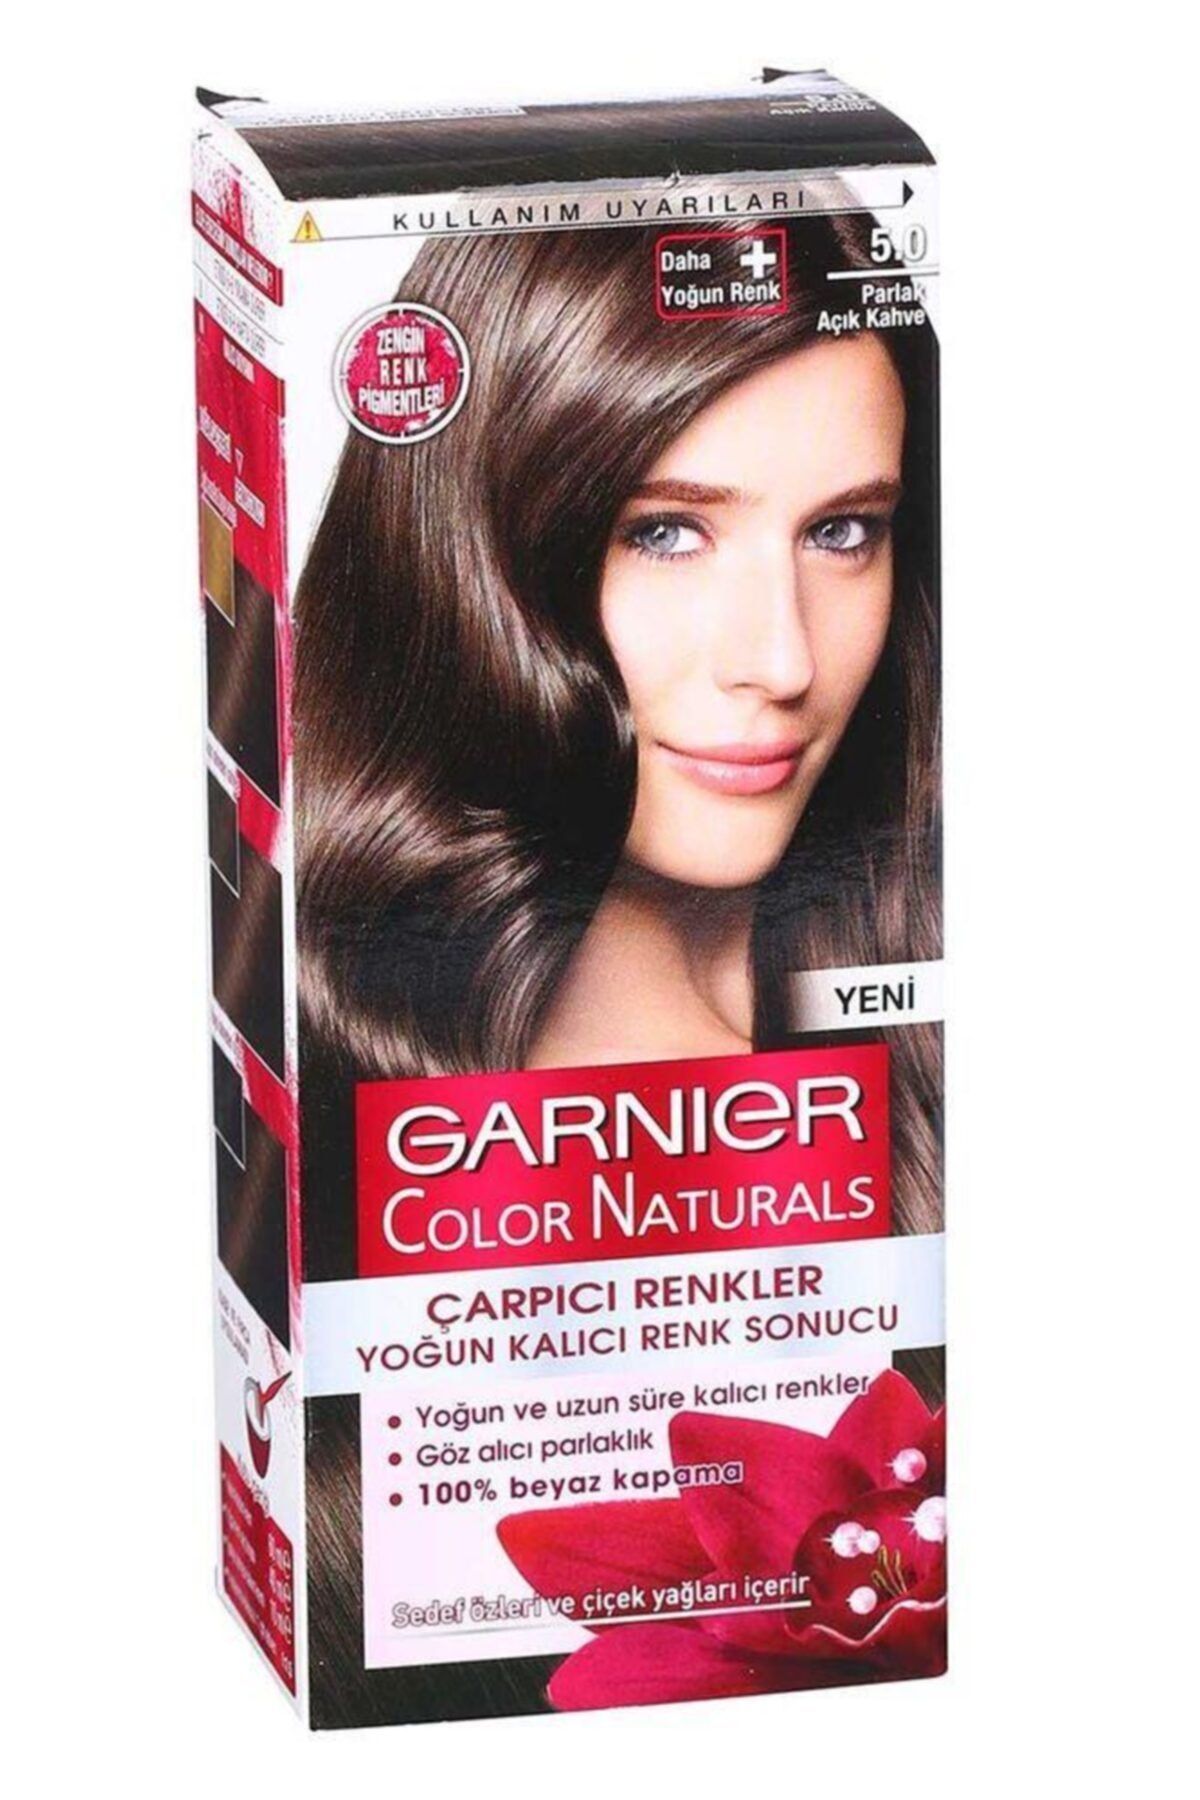 Garnier Açık Kahve Çarpıcı Renkler Parlak Saç Boyası